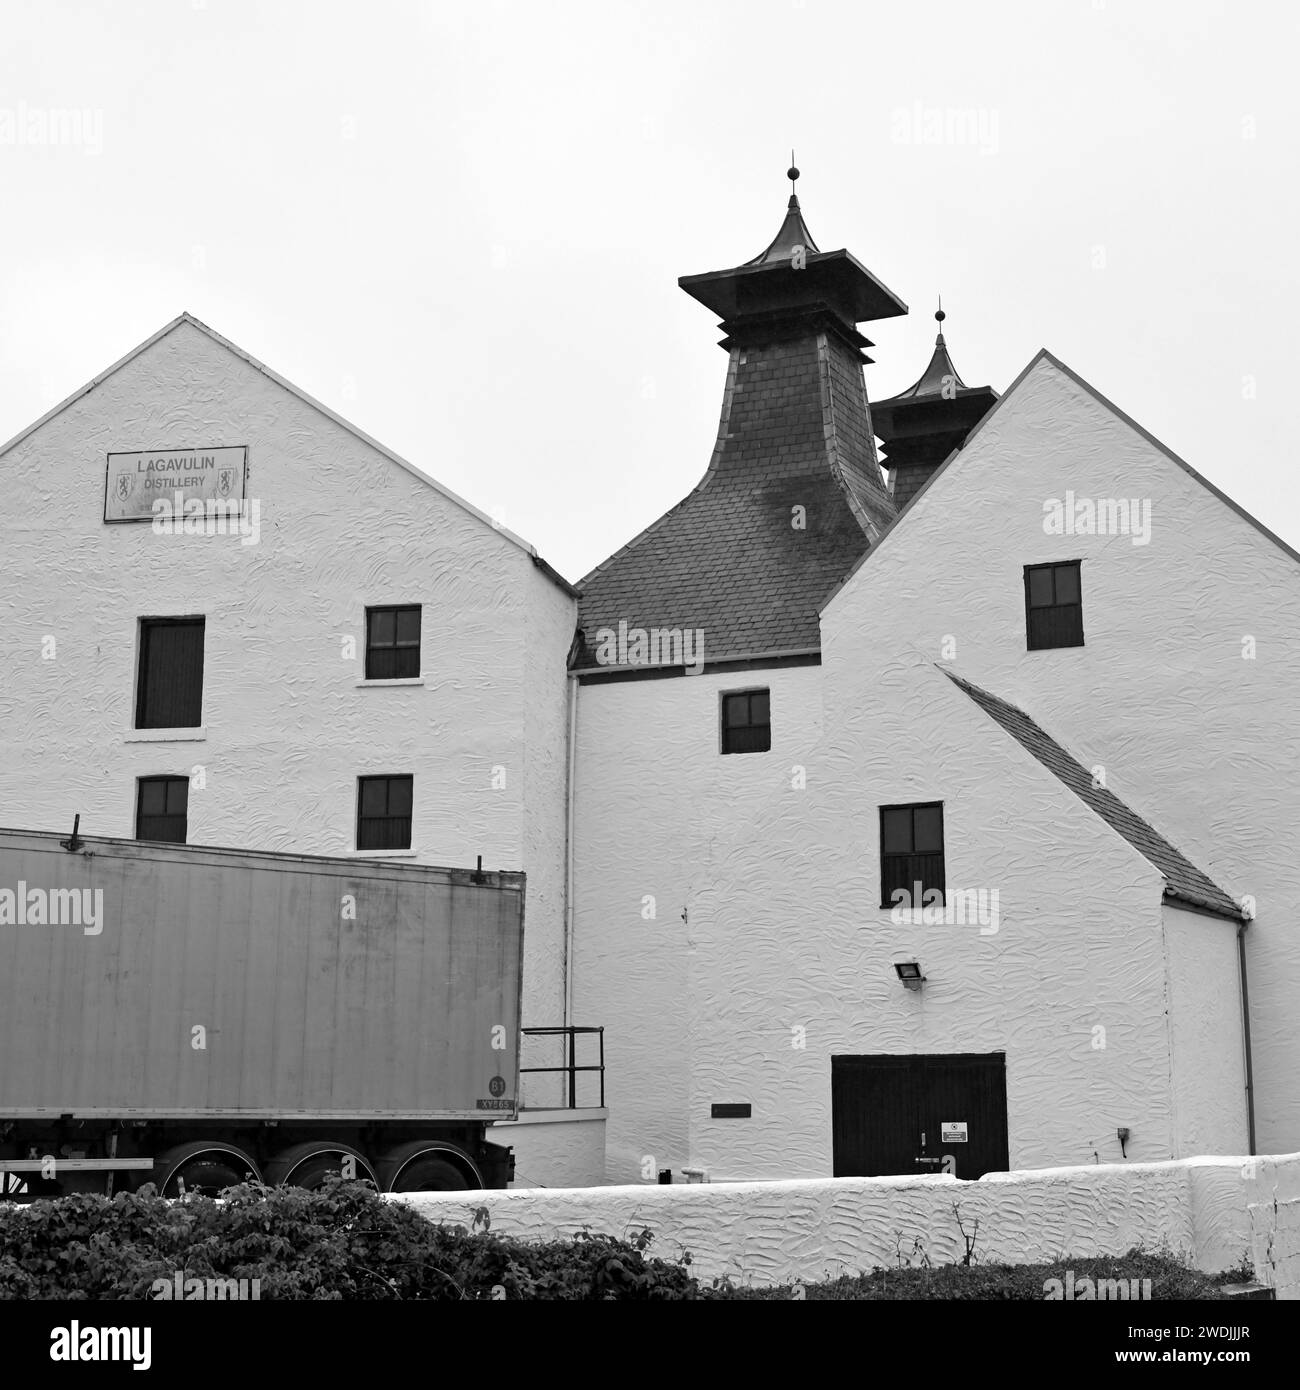 Distilleria di whisky Lagavulin nel villaggio di Lagavulin, a sud dell'isola di Islay, in Scozia. Foto Stock